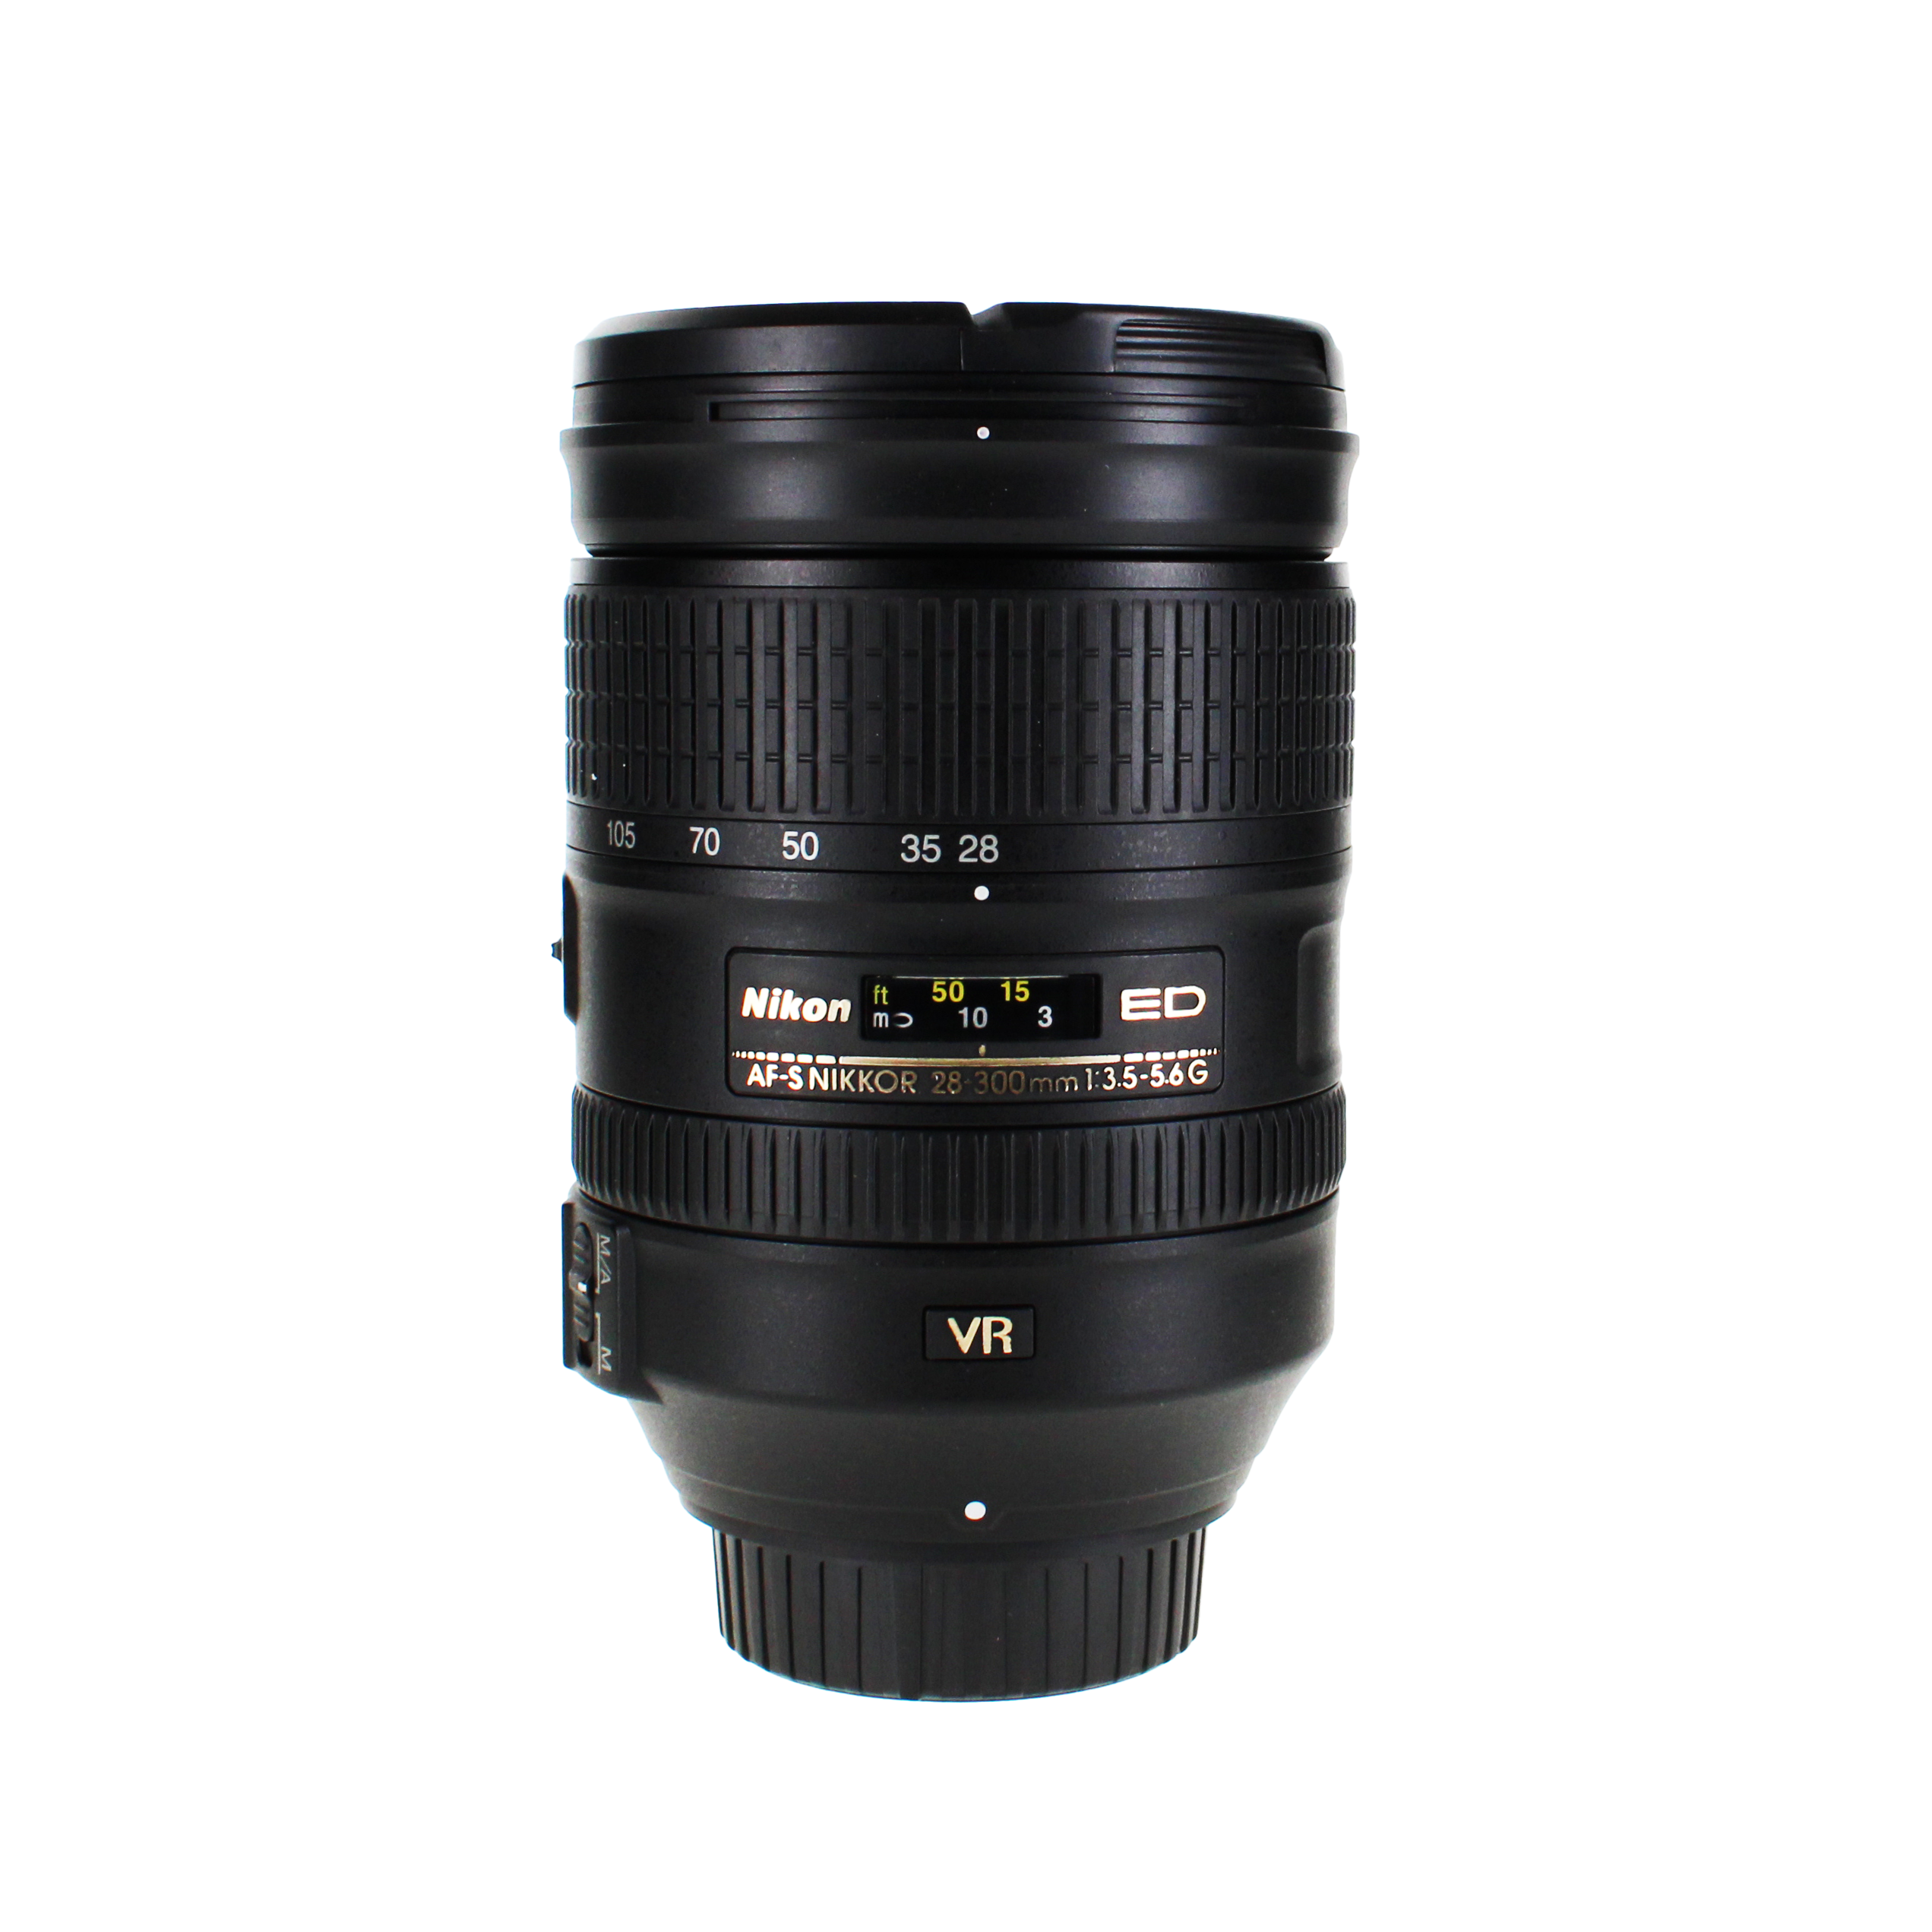 Nikon 28-300mm f/3.5-5.6G ED-IF AF-S VR II (Vibration Reduction) Wide Angle Telephoto Zoom Nikkor Lens - International Version (No Warranty)